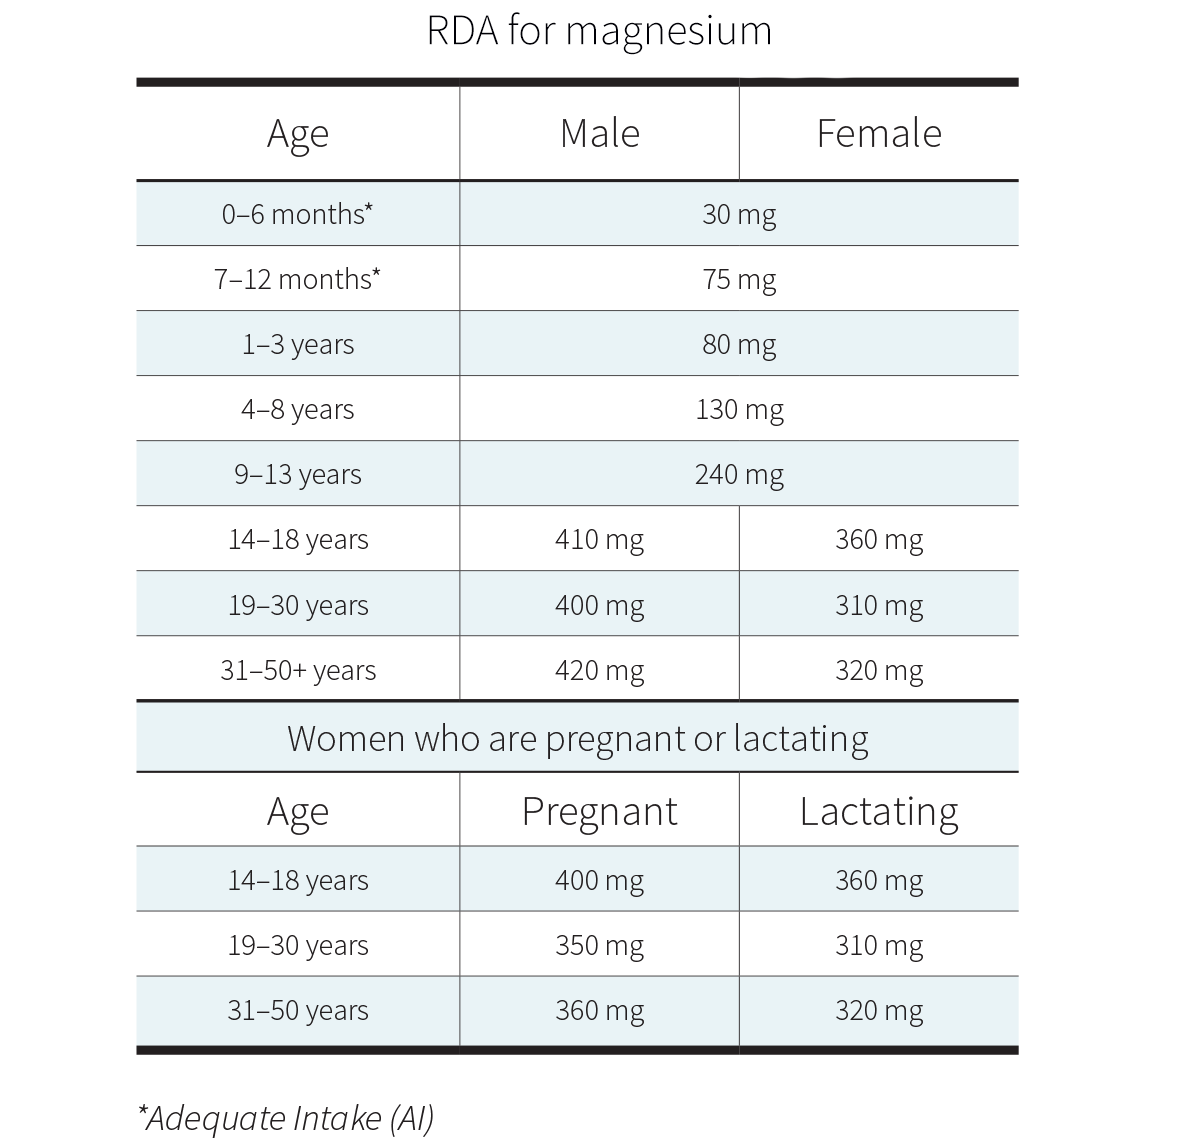 RDA for magnesium